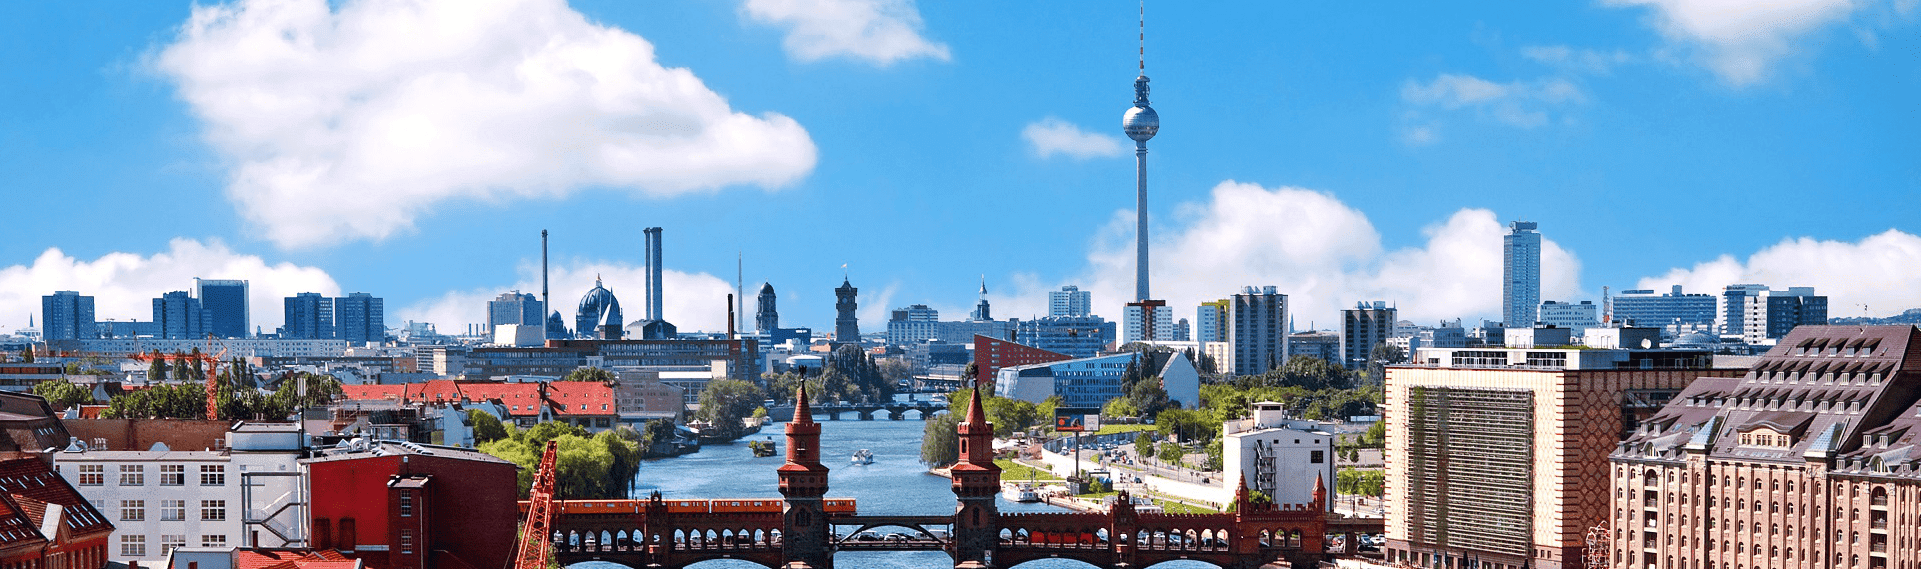 Panorama von der Stadt Berlin.